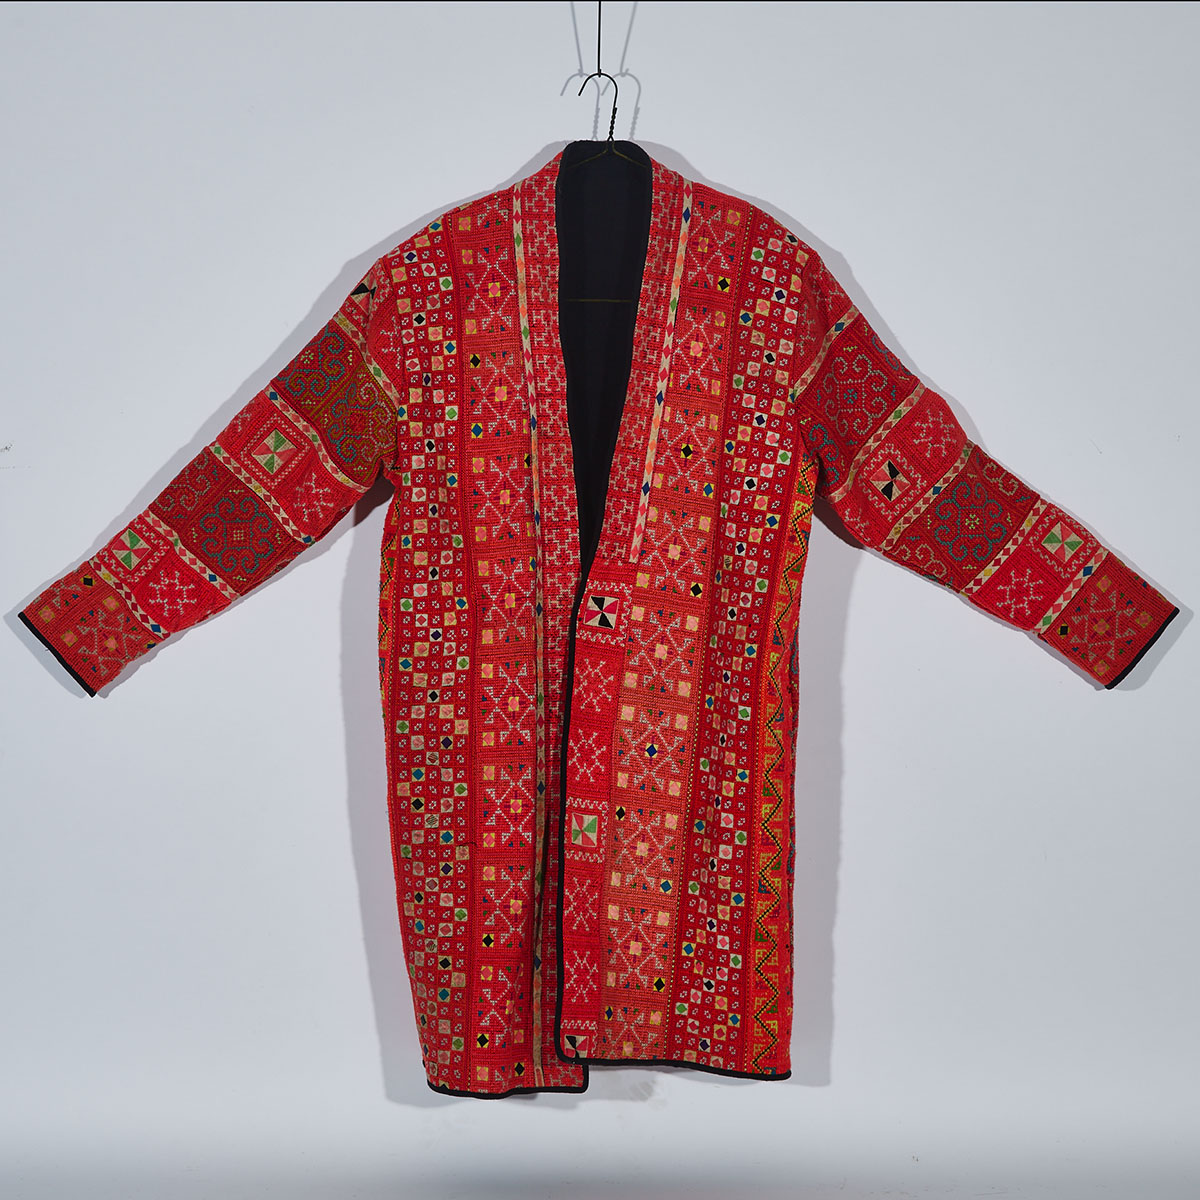 A Thai Tribal Fabric Robe